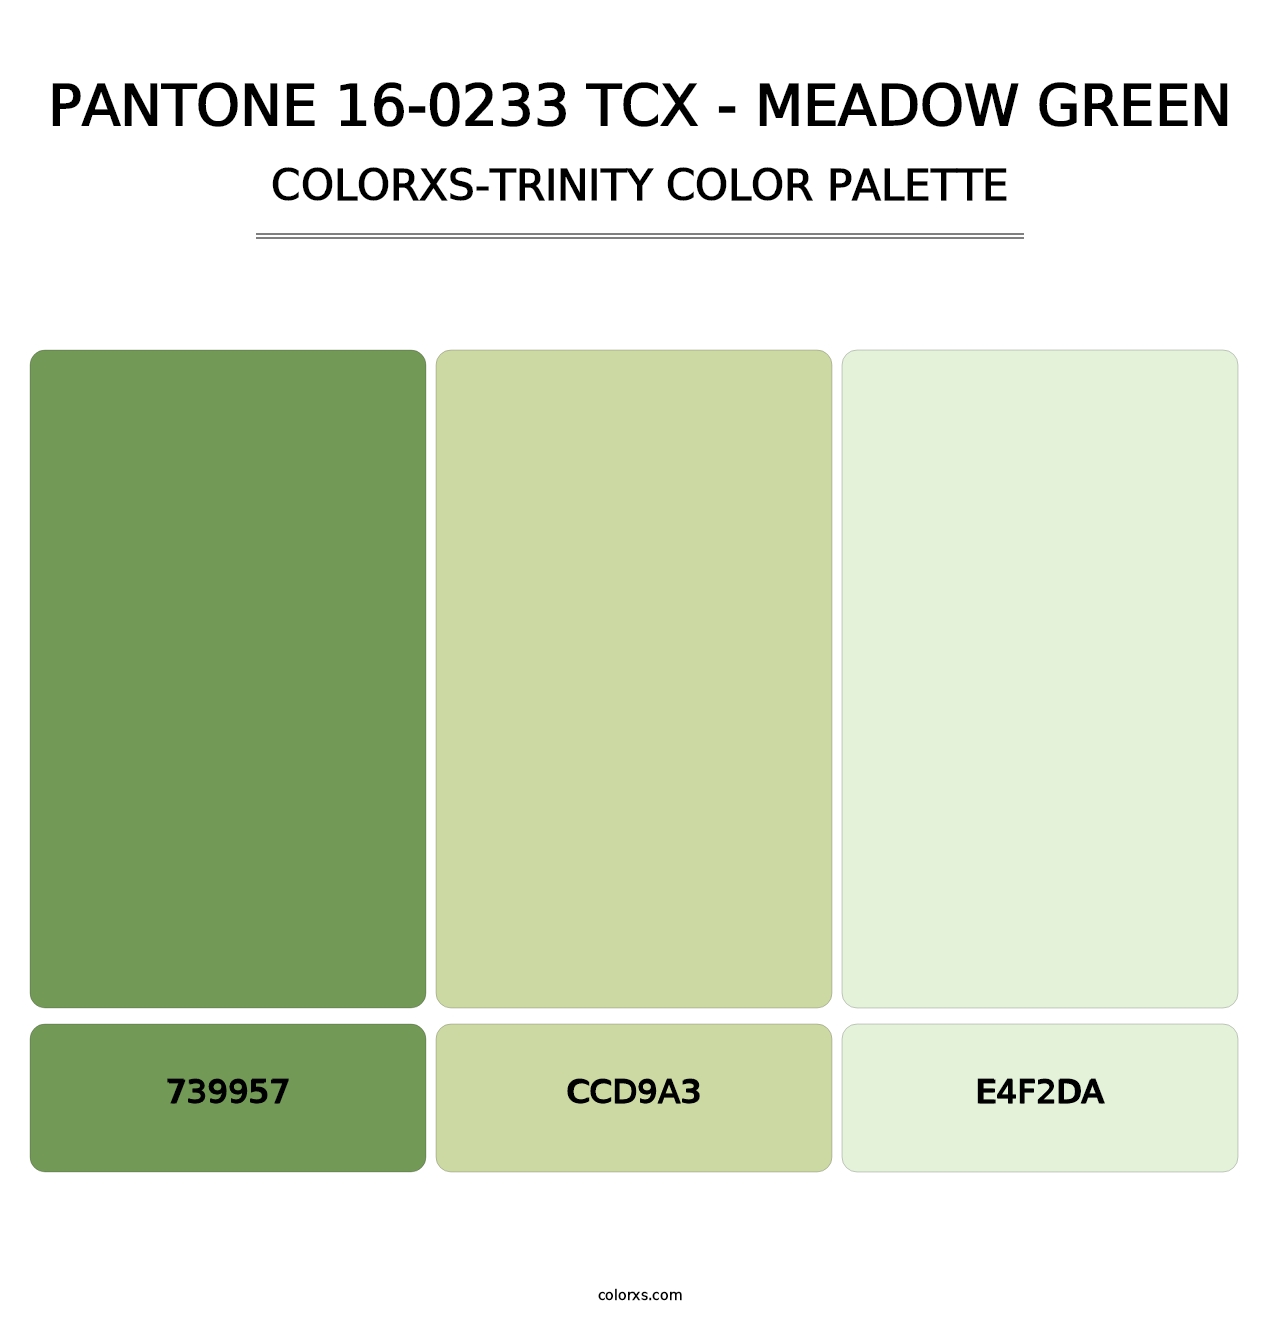 PANTONE 16-0233 TCX - Meadow Green - Colorxs Trinity Palette